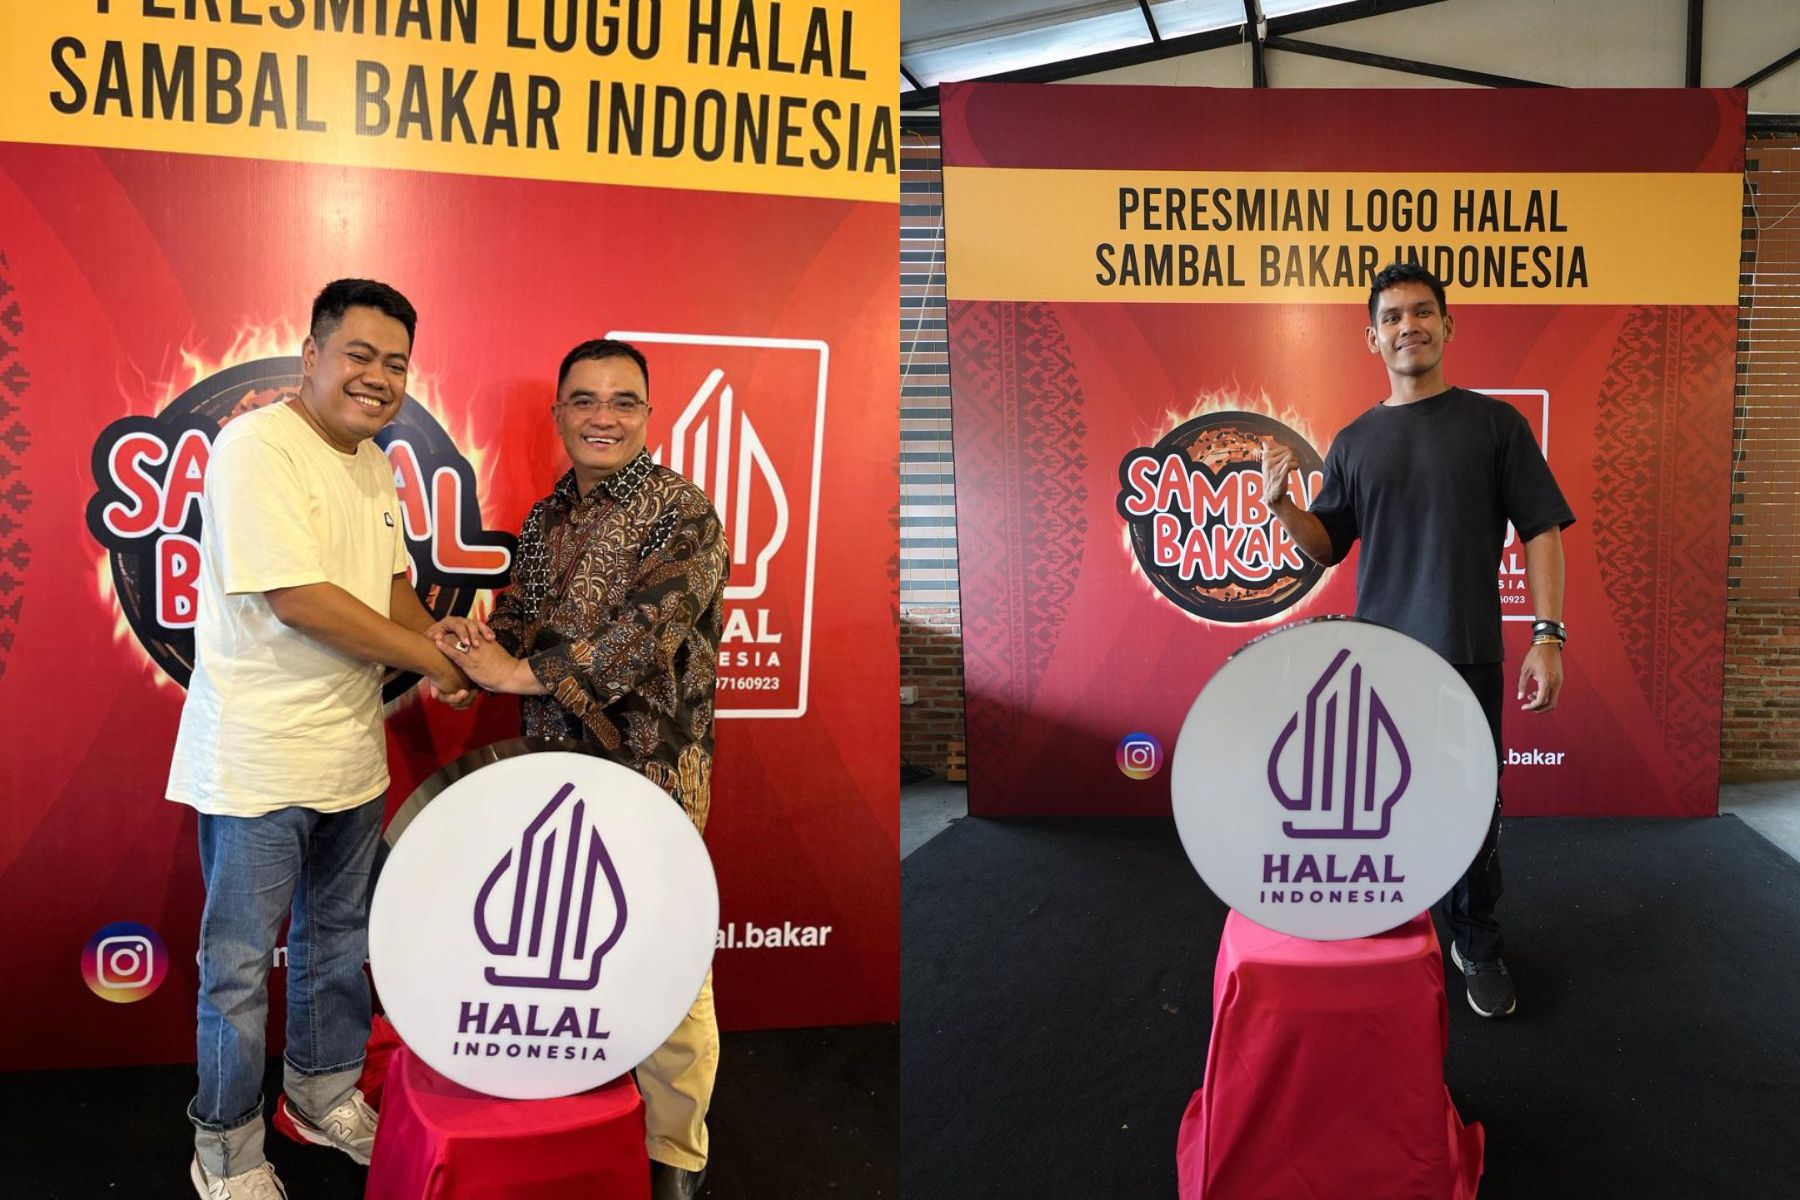 Peresmian logo halal Sambal Bakar Indonesia oleh MUI